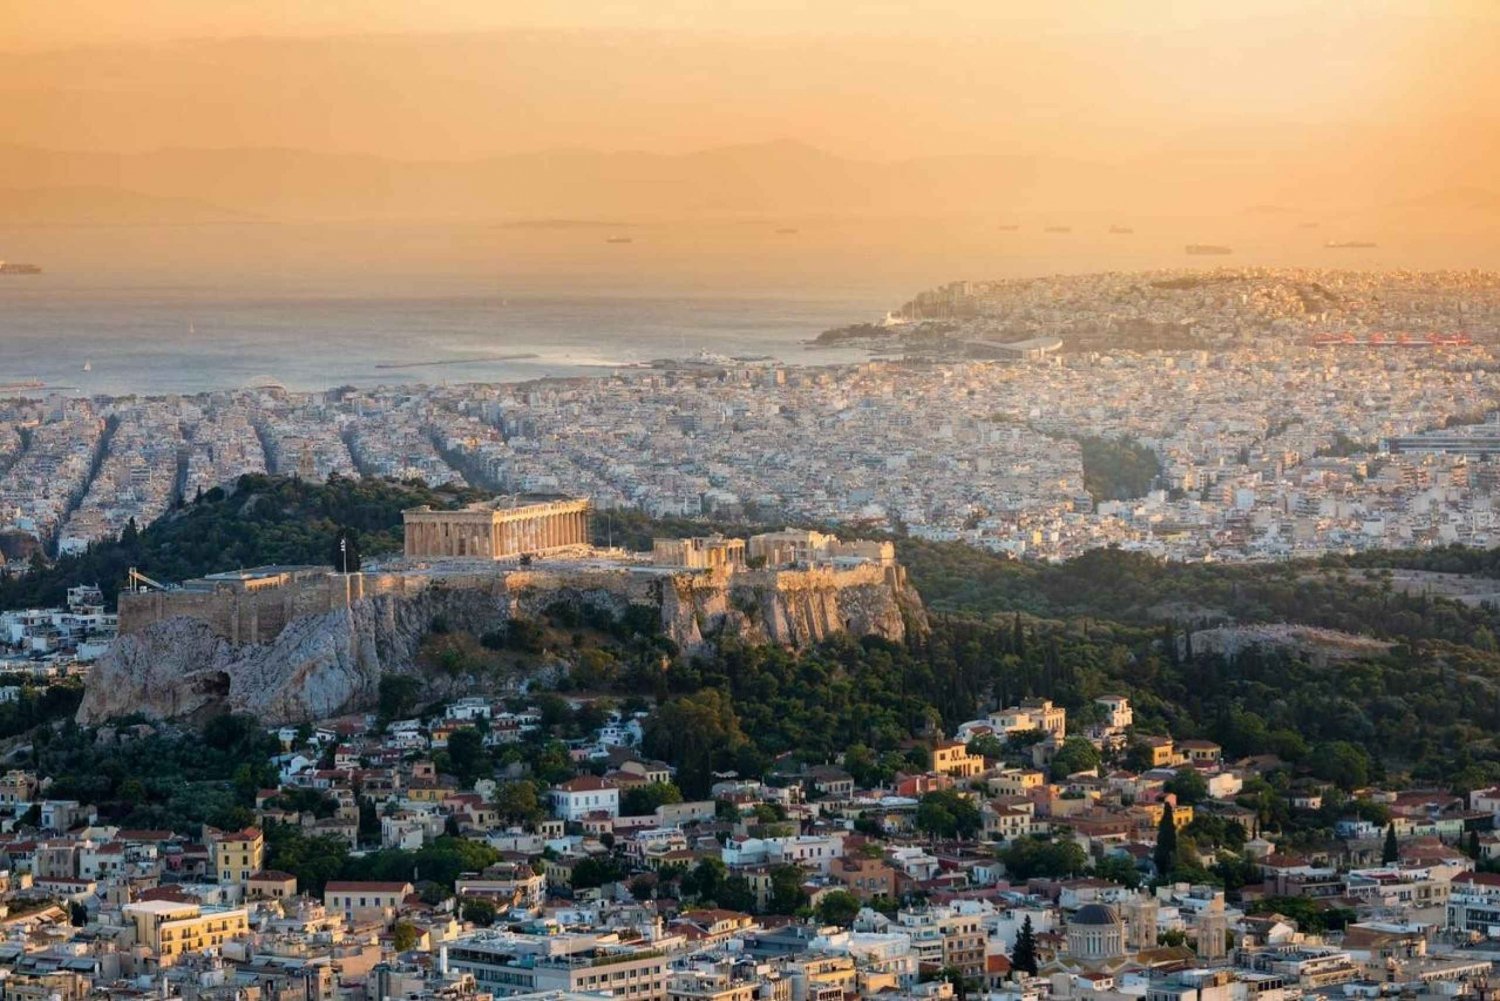 Atene: il tour guidato dell'Acropoli in spagnolo senza biglietti